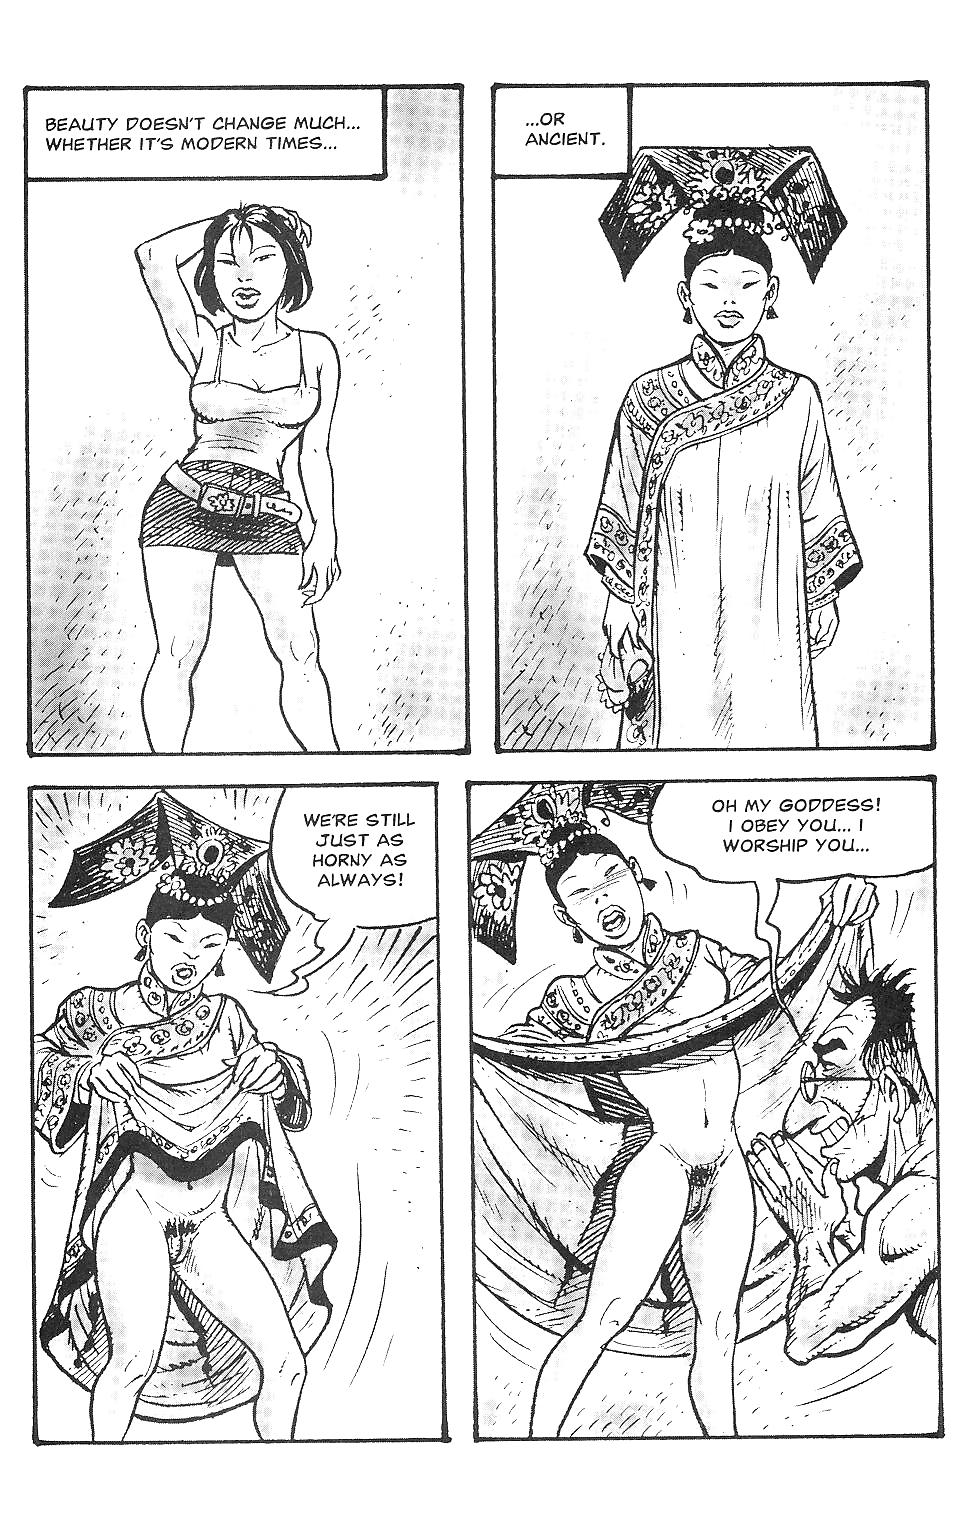 Orientations Sexuelles Comics De Harcèlement #17273382